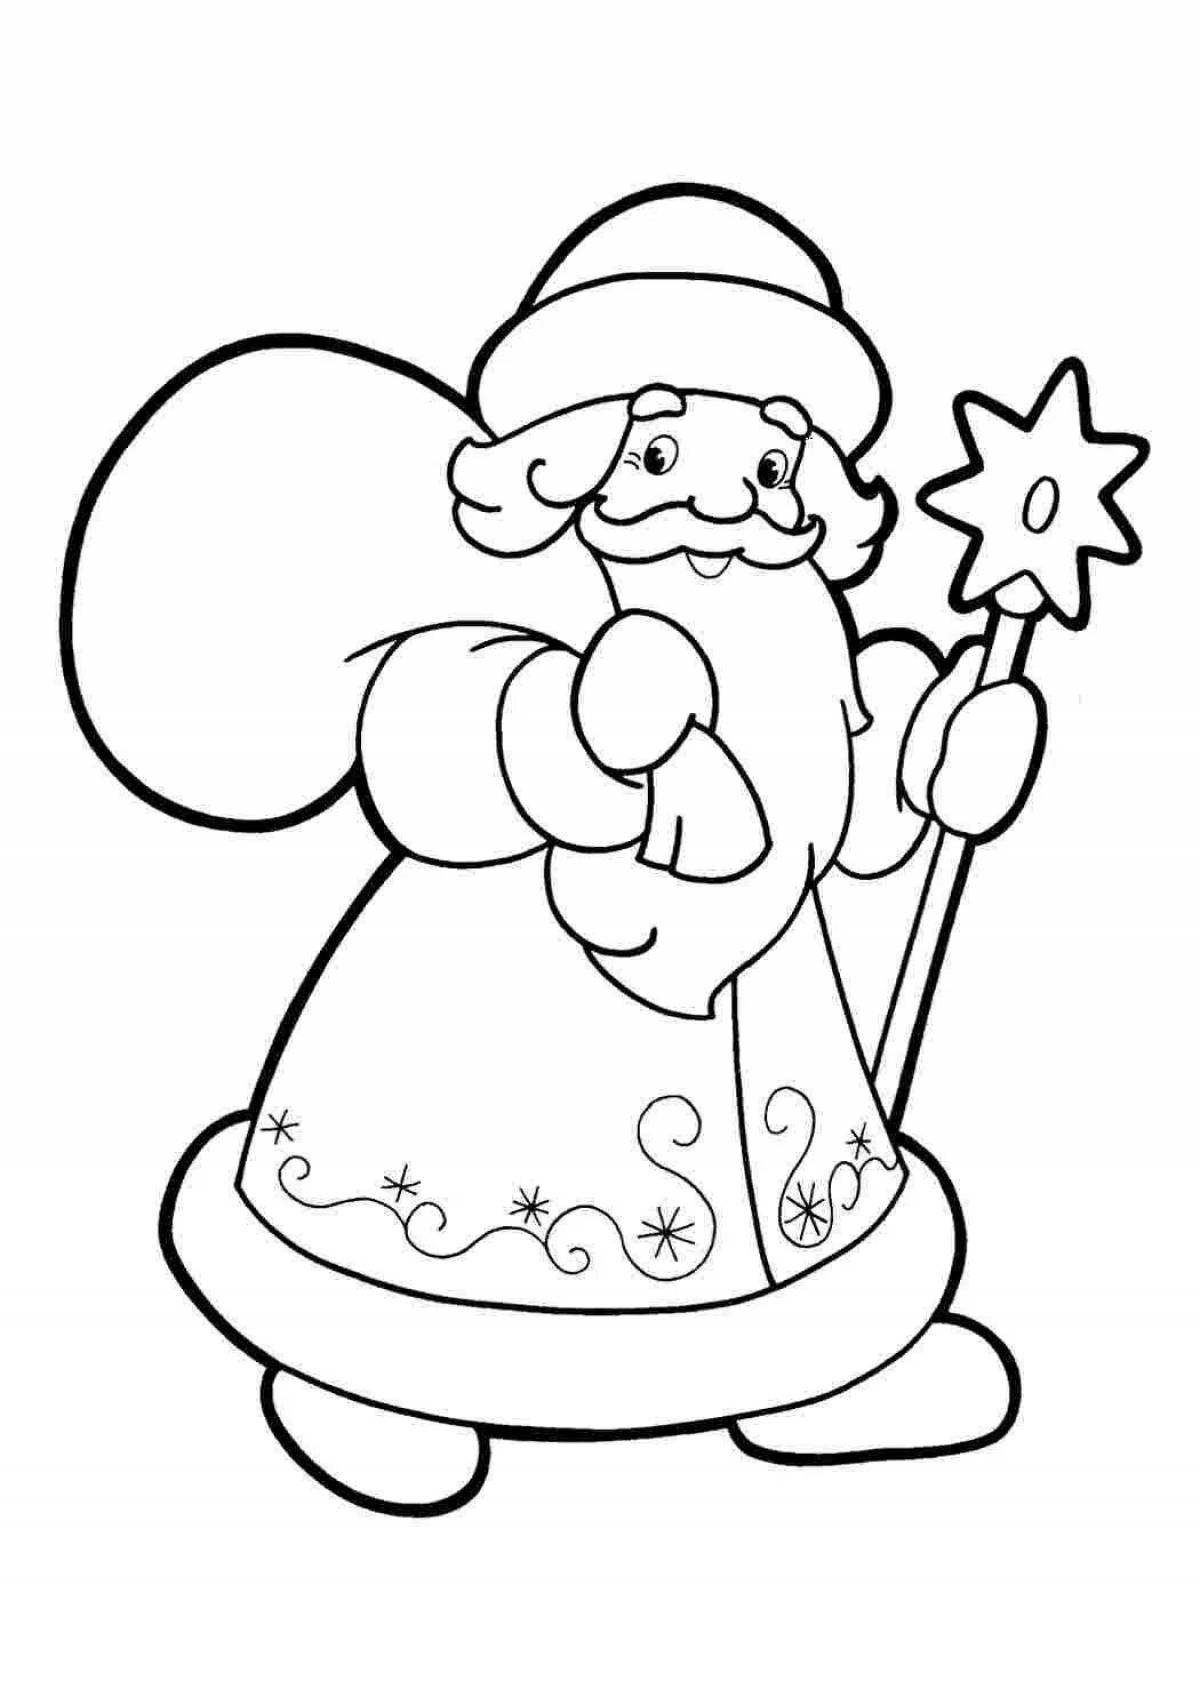 Раскраски Дед мороз и снегурочка рисунок (38 шт.) - скачать или распечатать бесплатно #